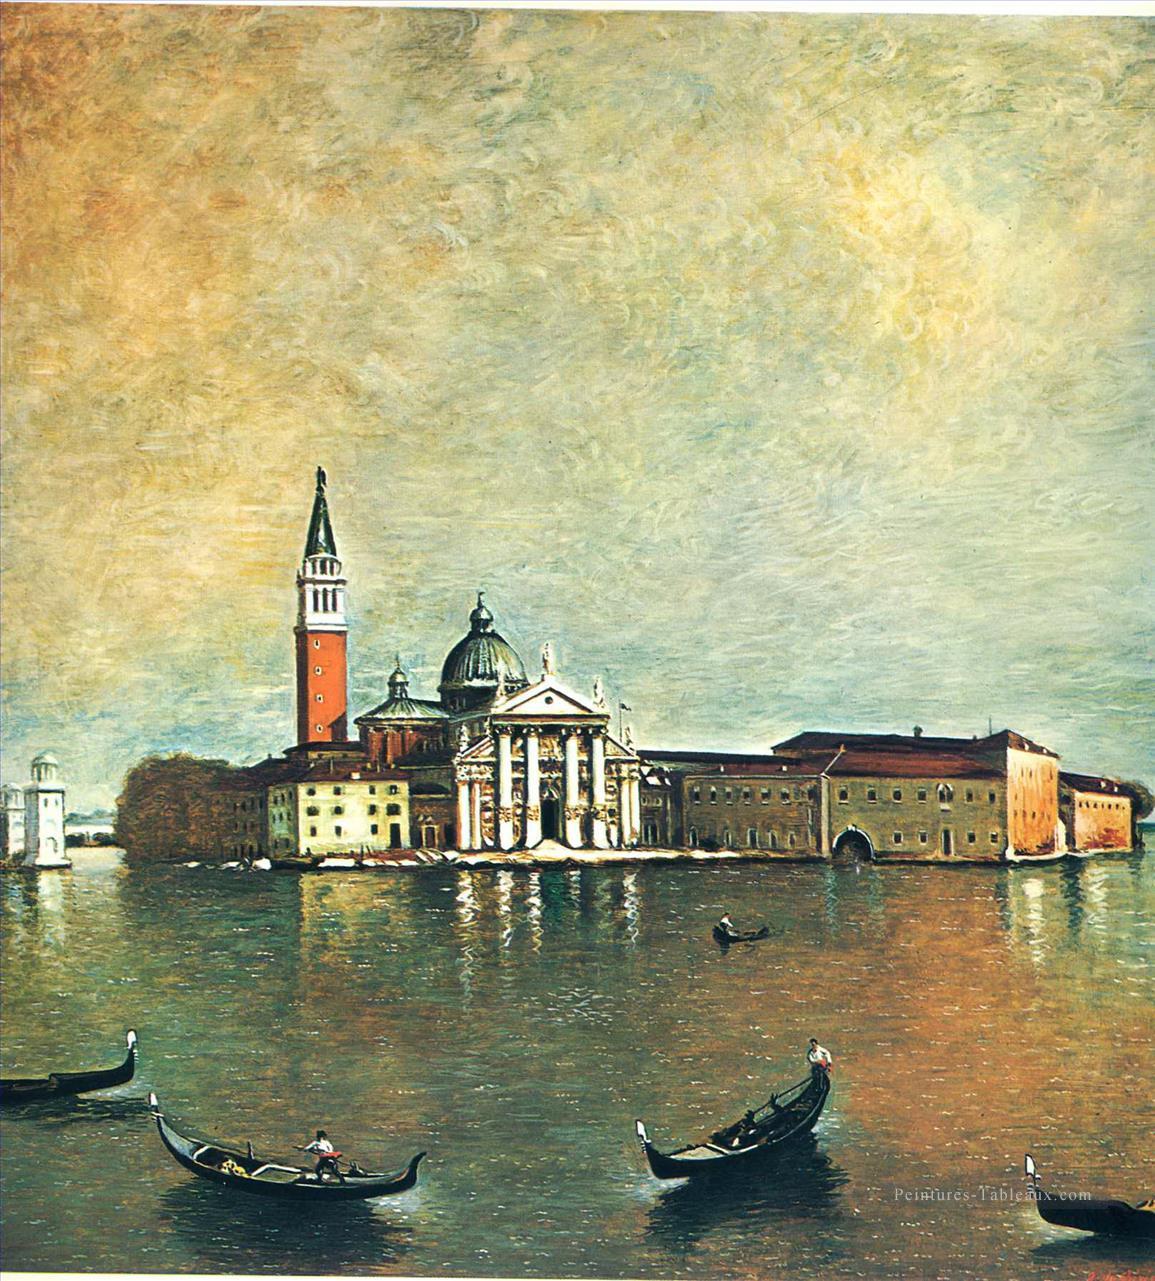 île San Giorgio 1967 Giorgio de Chirico surréalisme métaphysique Peintures à l'huile